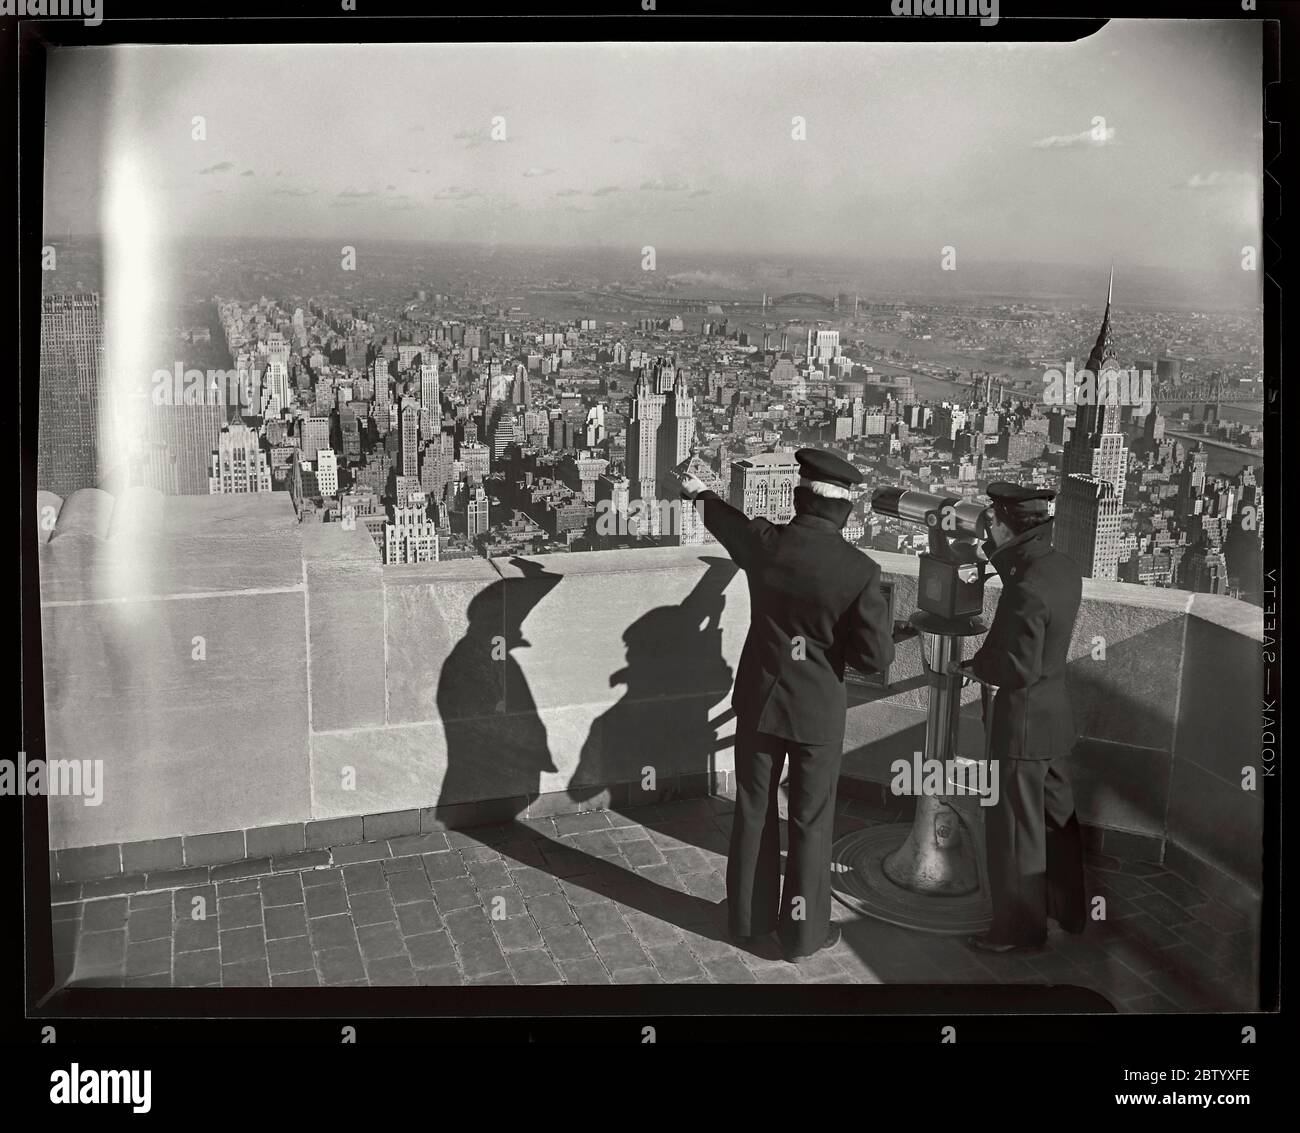 2 Matrosen, die auf der Aussichtsplattform des Empire State Building blicken. Manhattan, New York, 1947. Bild von 4x5 Zoll Kamera negativ. Stockfoto